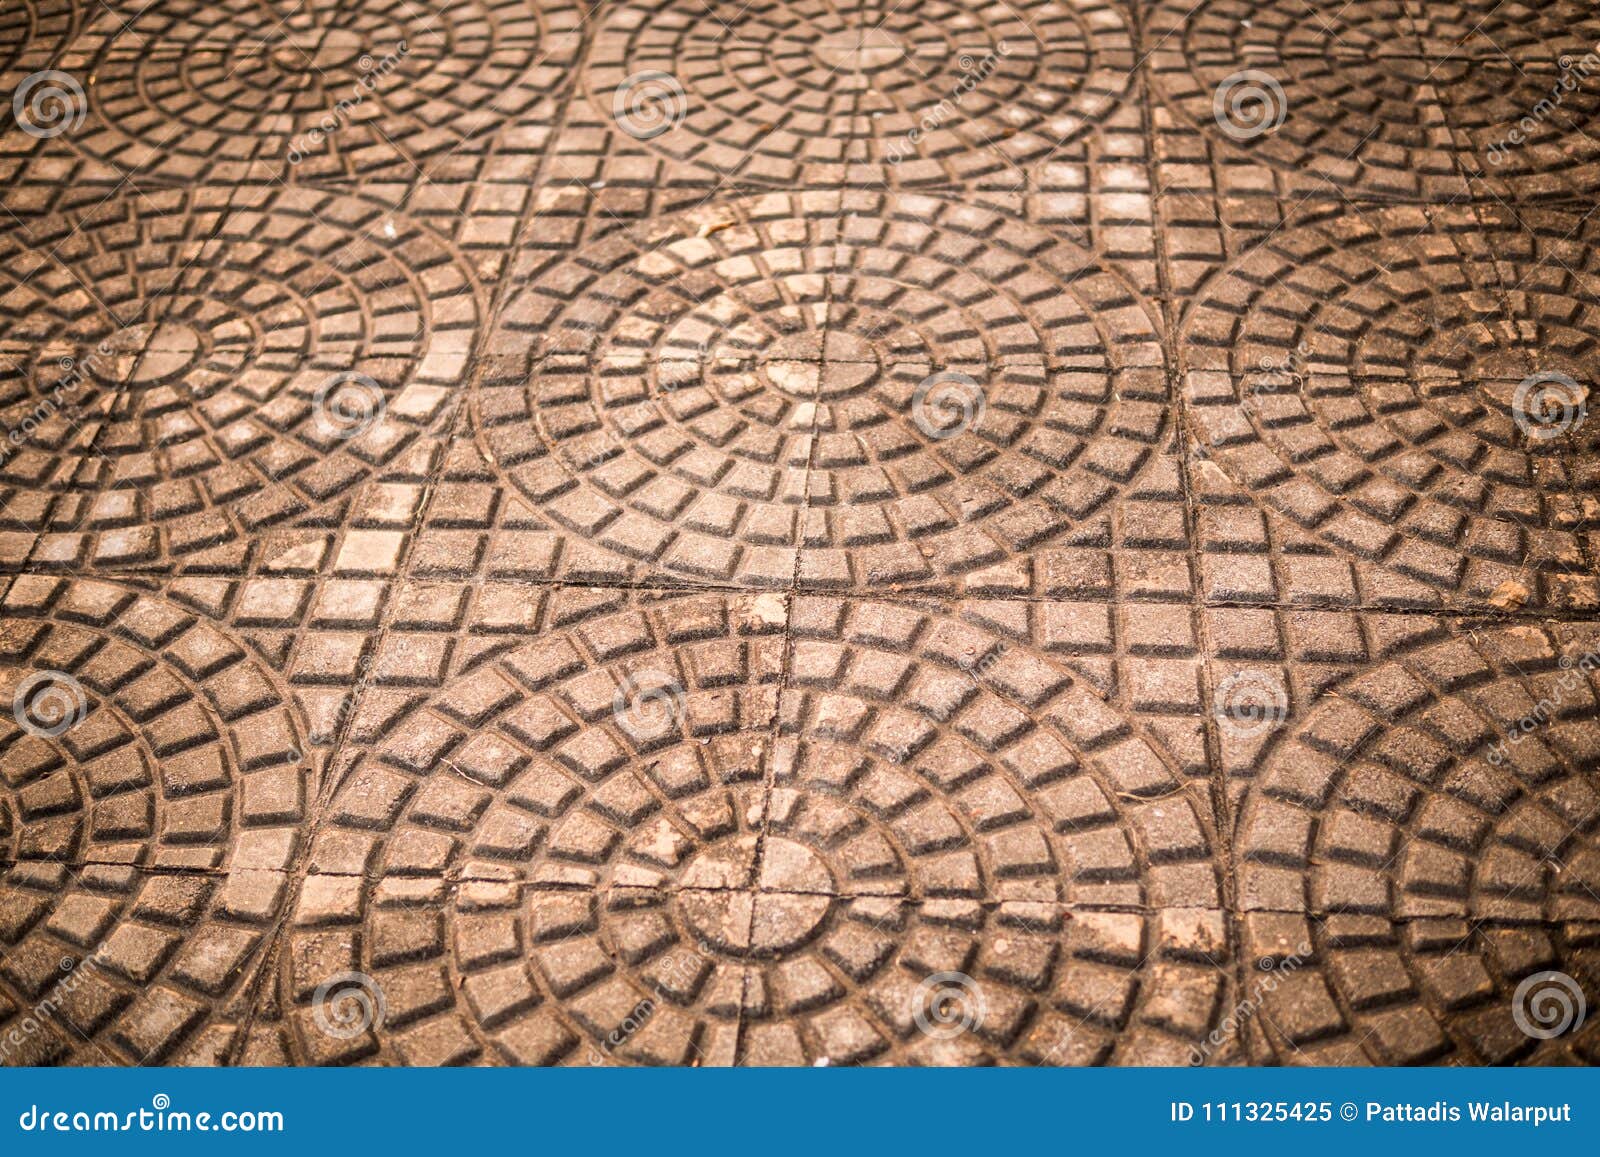 Cement Tiles Floor Rough Textured Stone Tiles Exterior Walkway